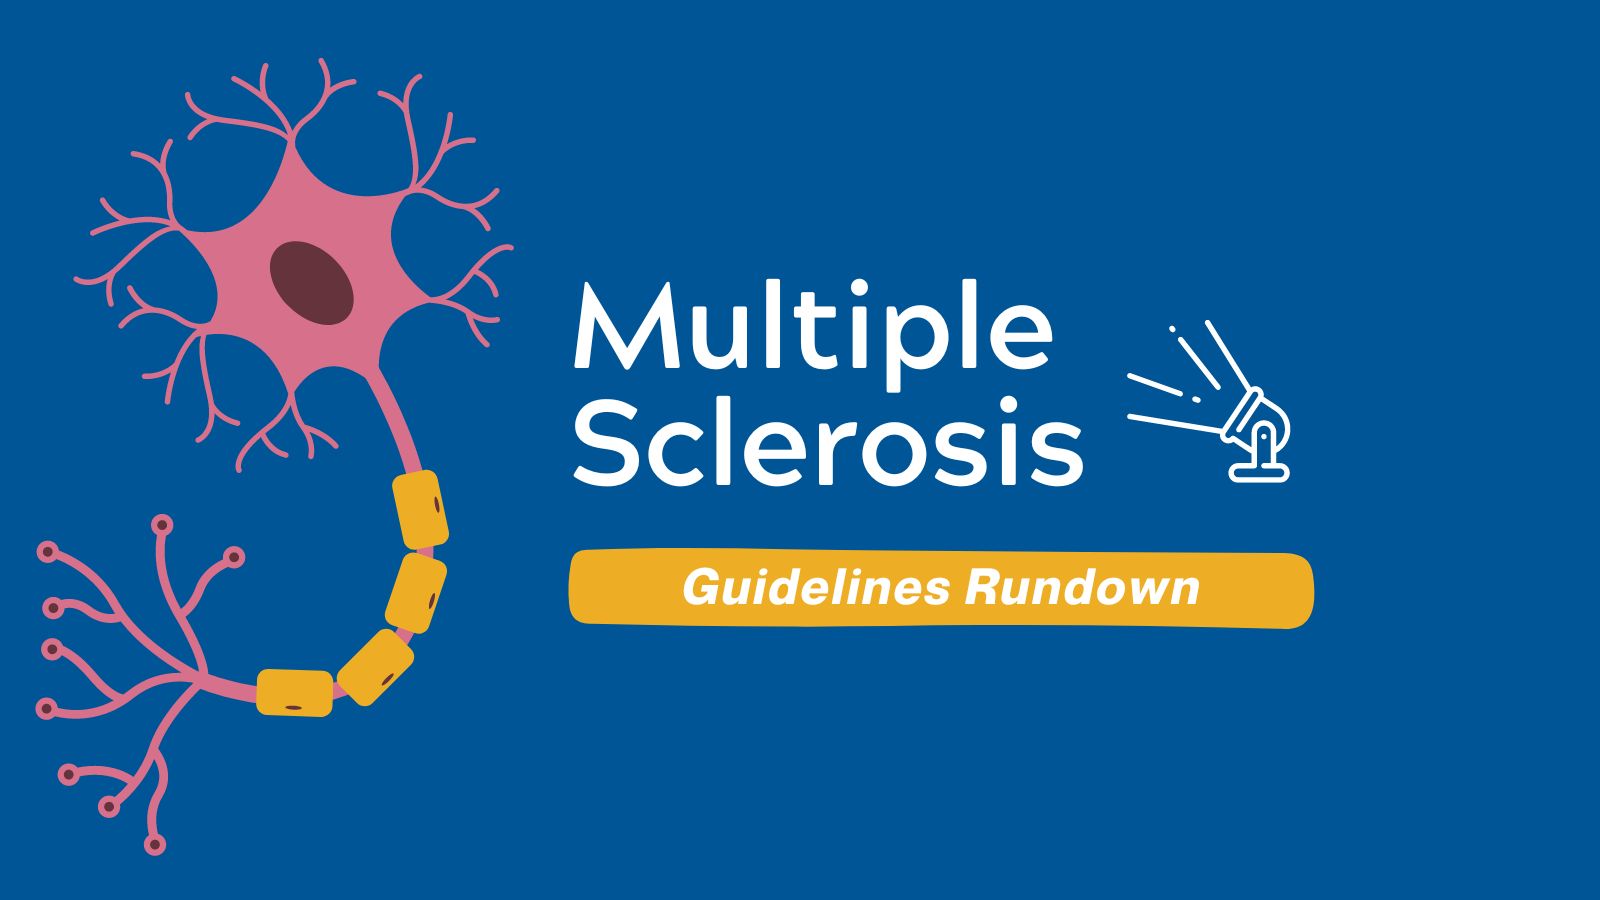 Guidelines Rundown Multiple Sclerosis